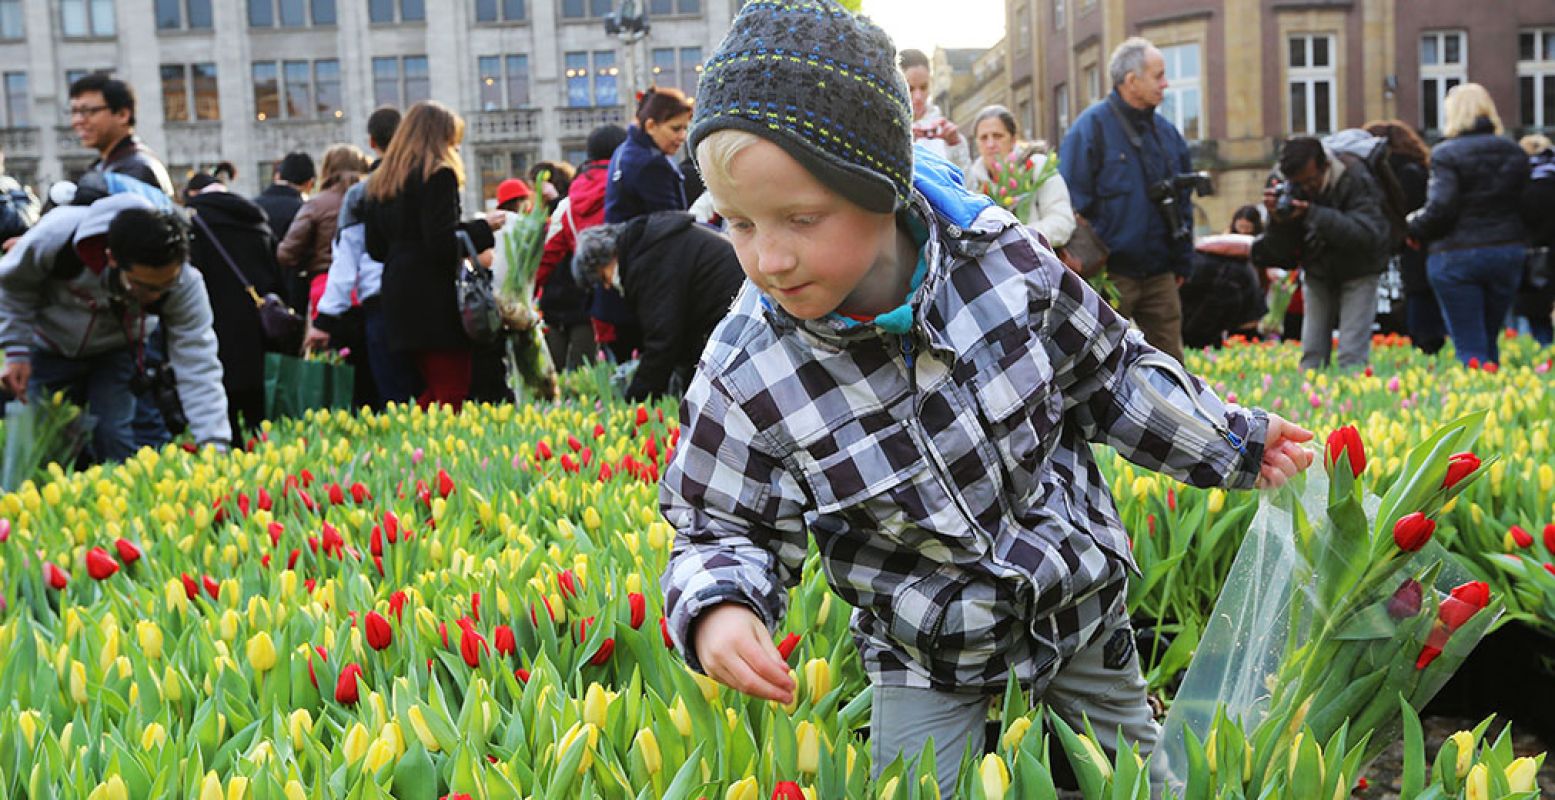 Het tulpenseizoen is geopend! Kom zaterdag gratis tulpen plukken op de Dam tijdens de Nationale Tulpendag. Foto: Tulpentijd.nl / VidiPhoto.